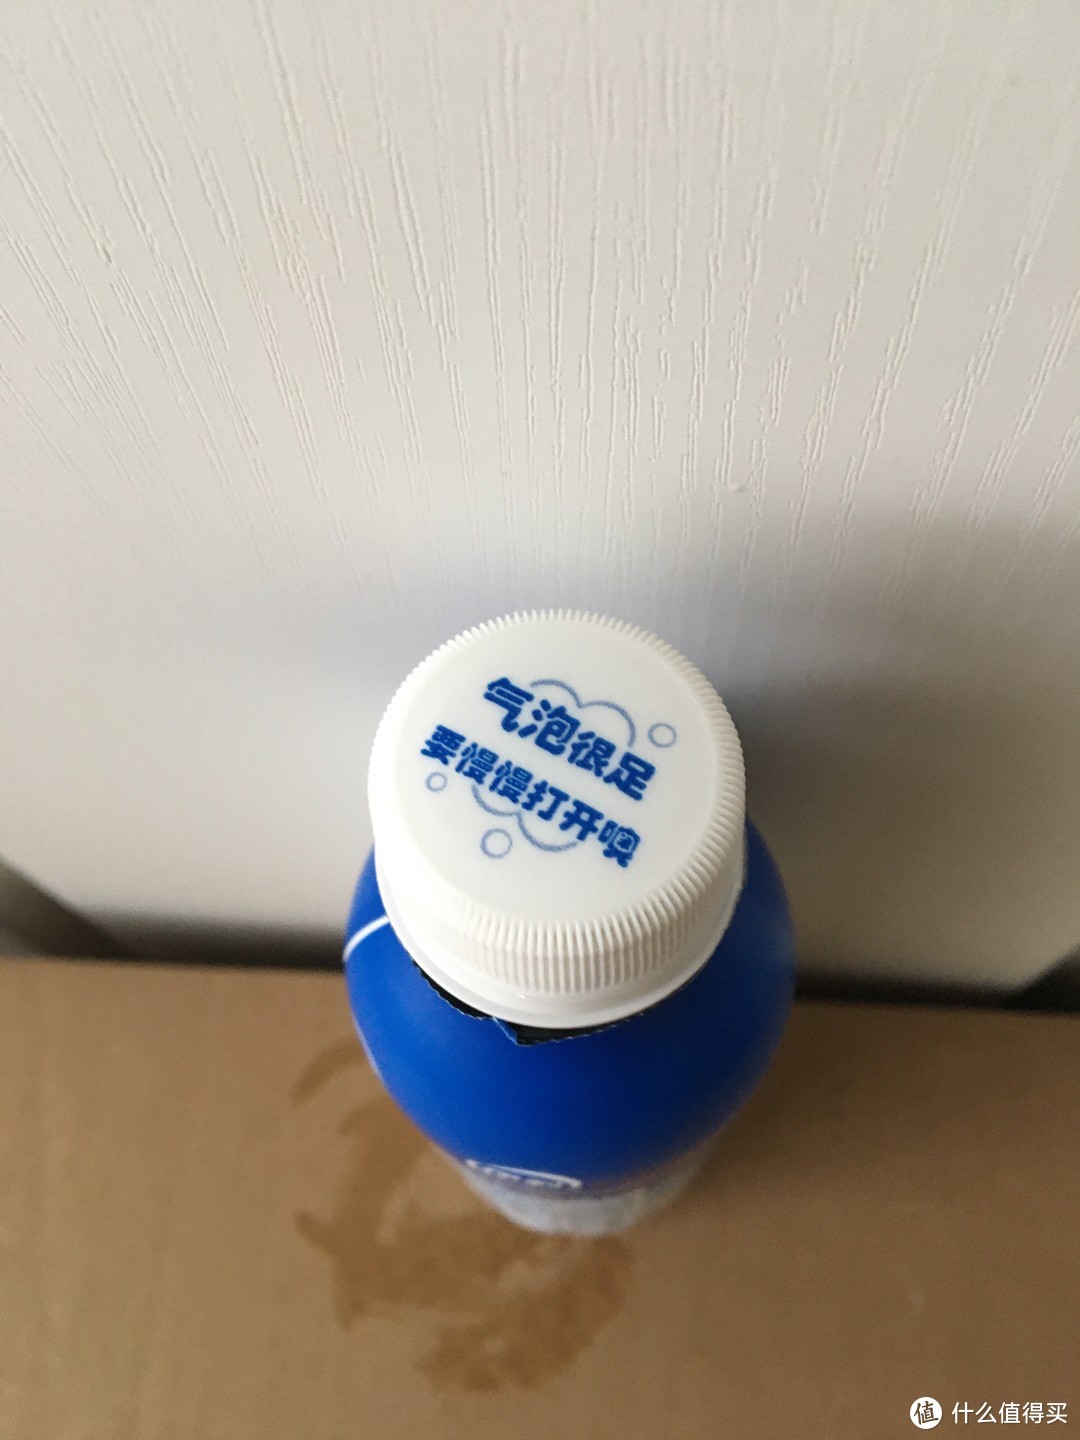 安慕希有气泡的酸奶。其实是乳酸菌风味发酵饮料。